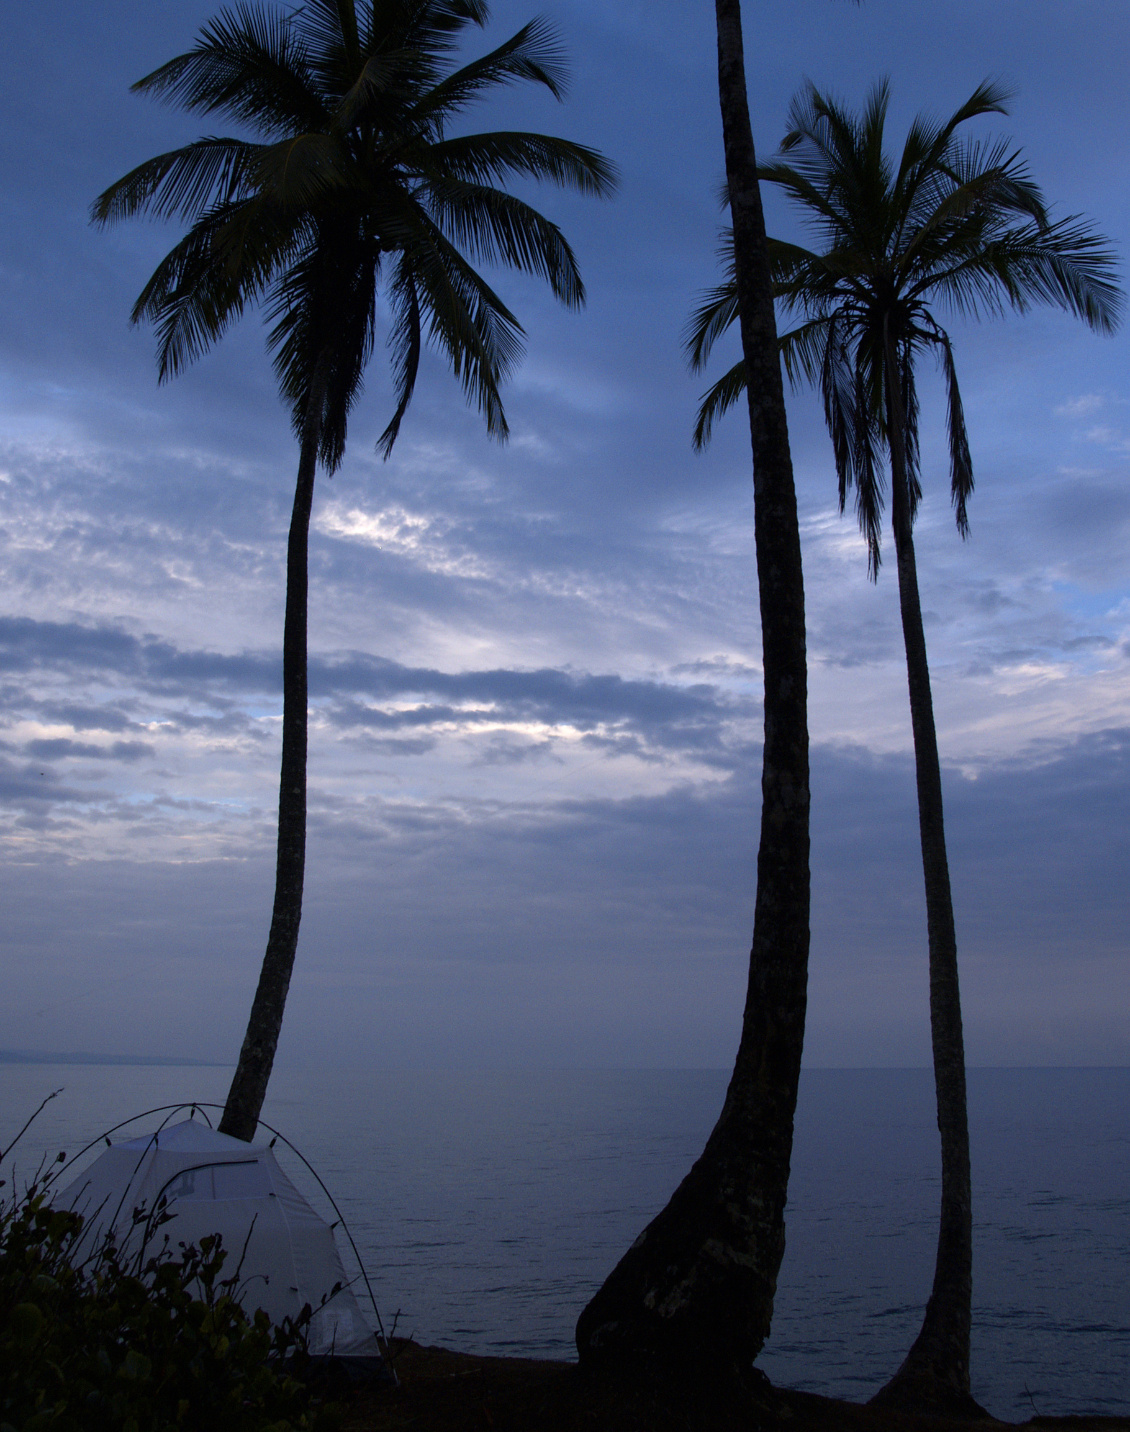 #36 Nicolas Masselot.
Bivouac coco, en mode discret, sur une toute petite place en surplomb de la mer des Caraïbes (Costa Rica).